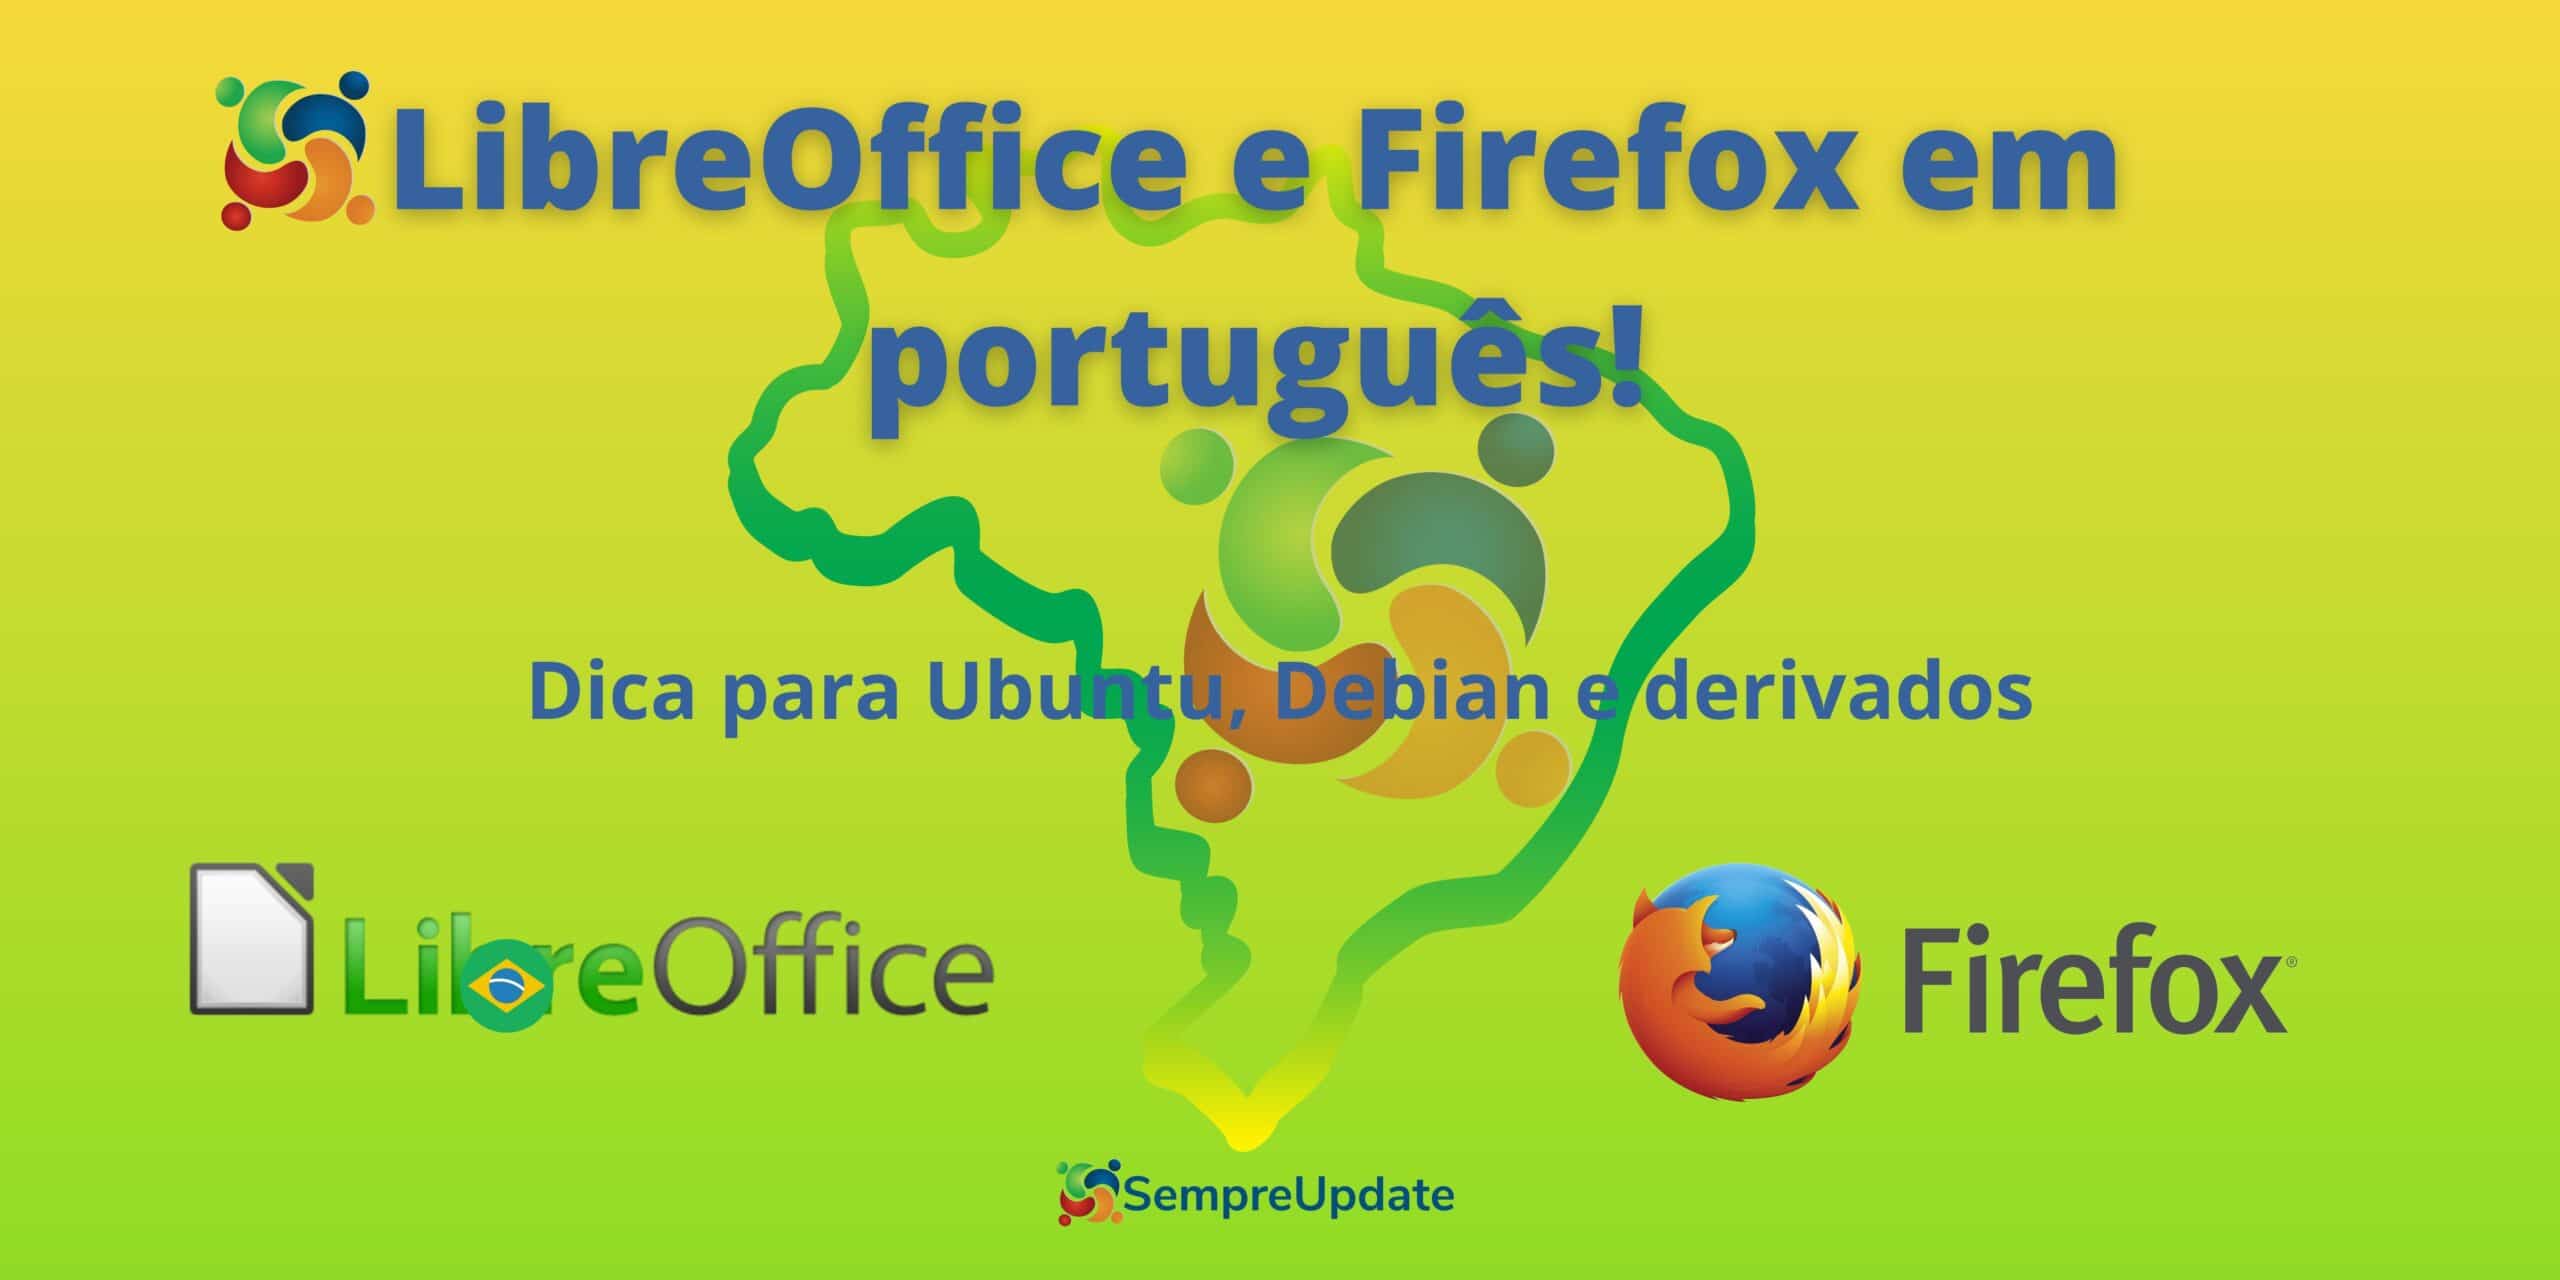 como-deixar-o-libreoffice-e-firefox-em-portugues-no-ubuntu-debian-linux-mint-e-derivados